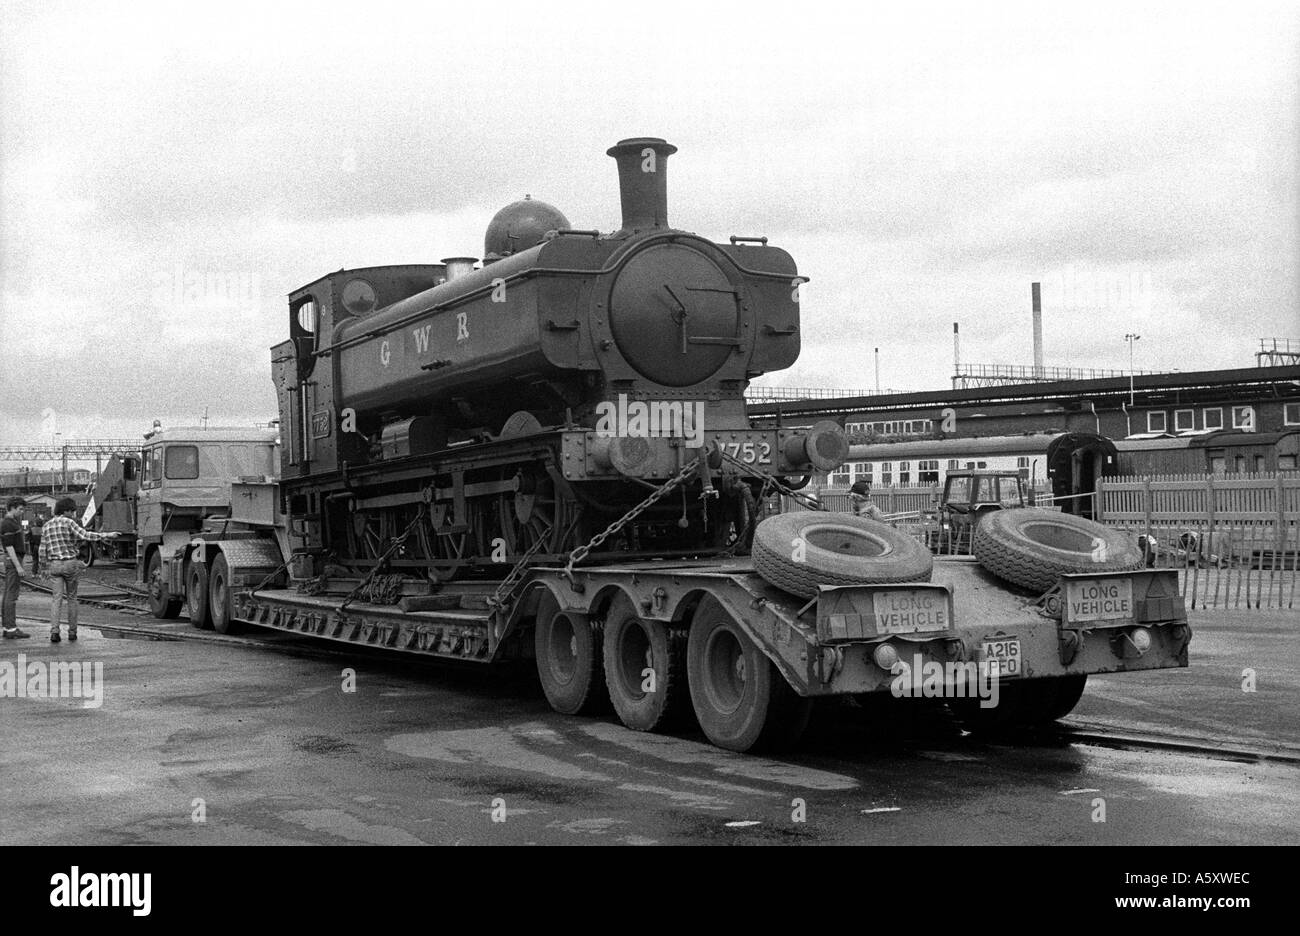 GWR 0-6-0 locomotive à vapeur réservoir pannier n° 7752 sur camion chargeur faible à la Birmingham Railway Museum, Tyseley, England, UK Banque D'Images